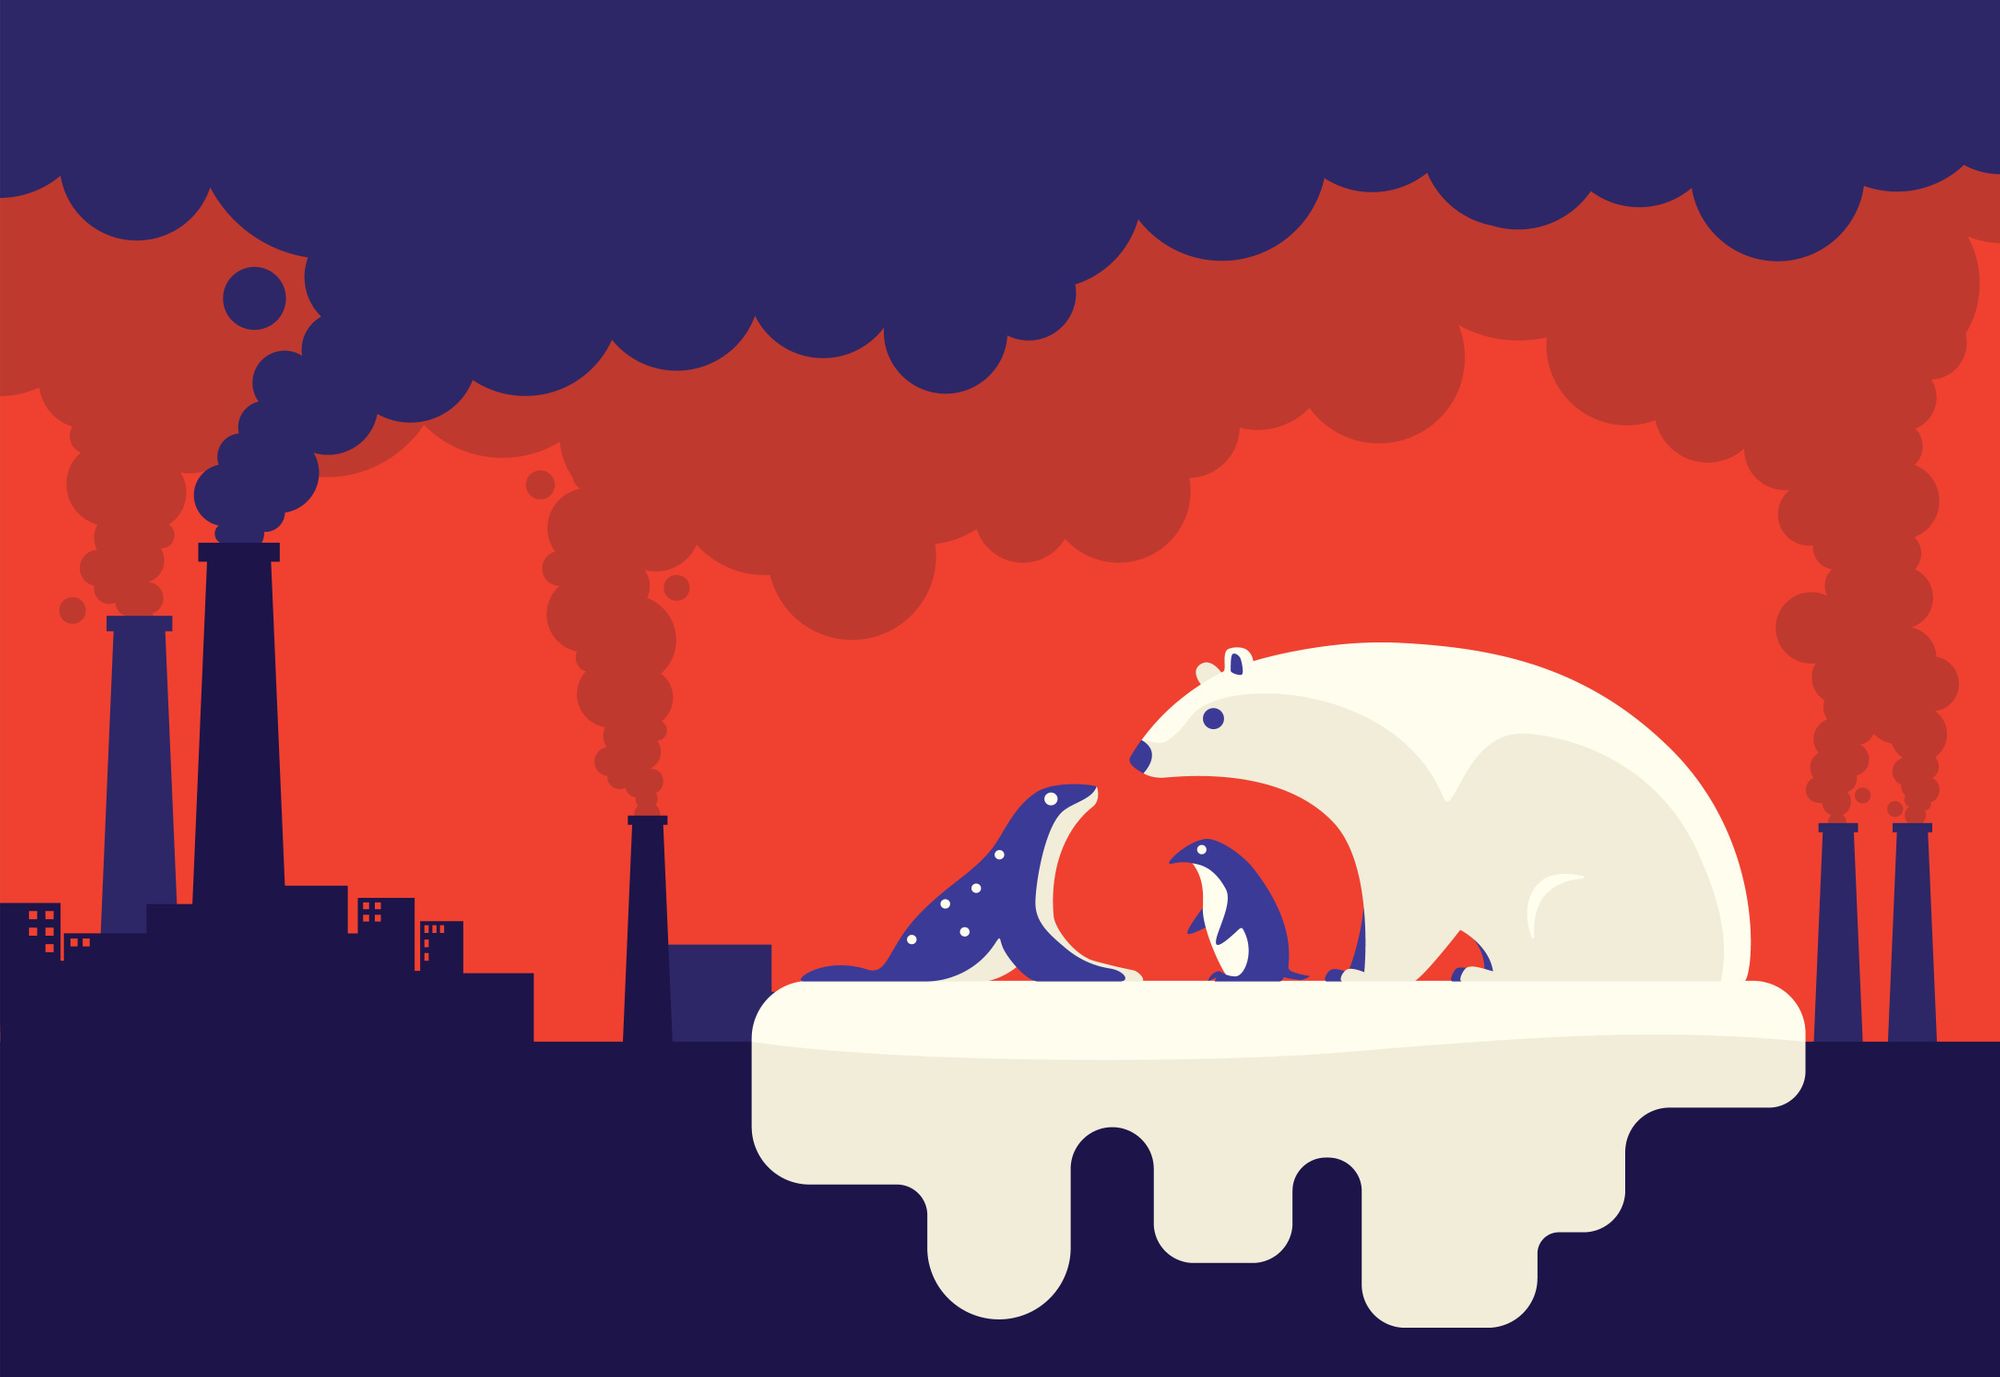 Una ilustración que muestra el papel de las empresas en el cambio climático, con un iceberg derritiéndose junto a la fábrica.